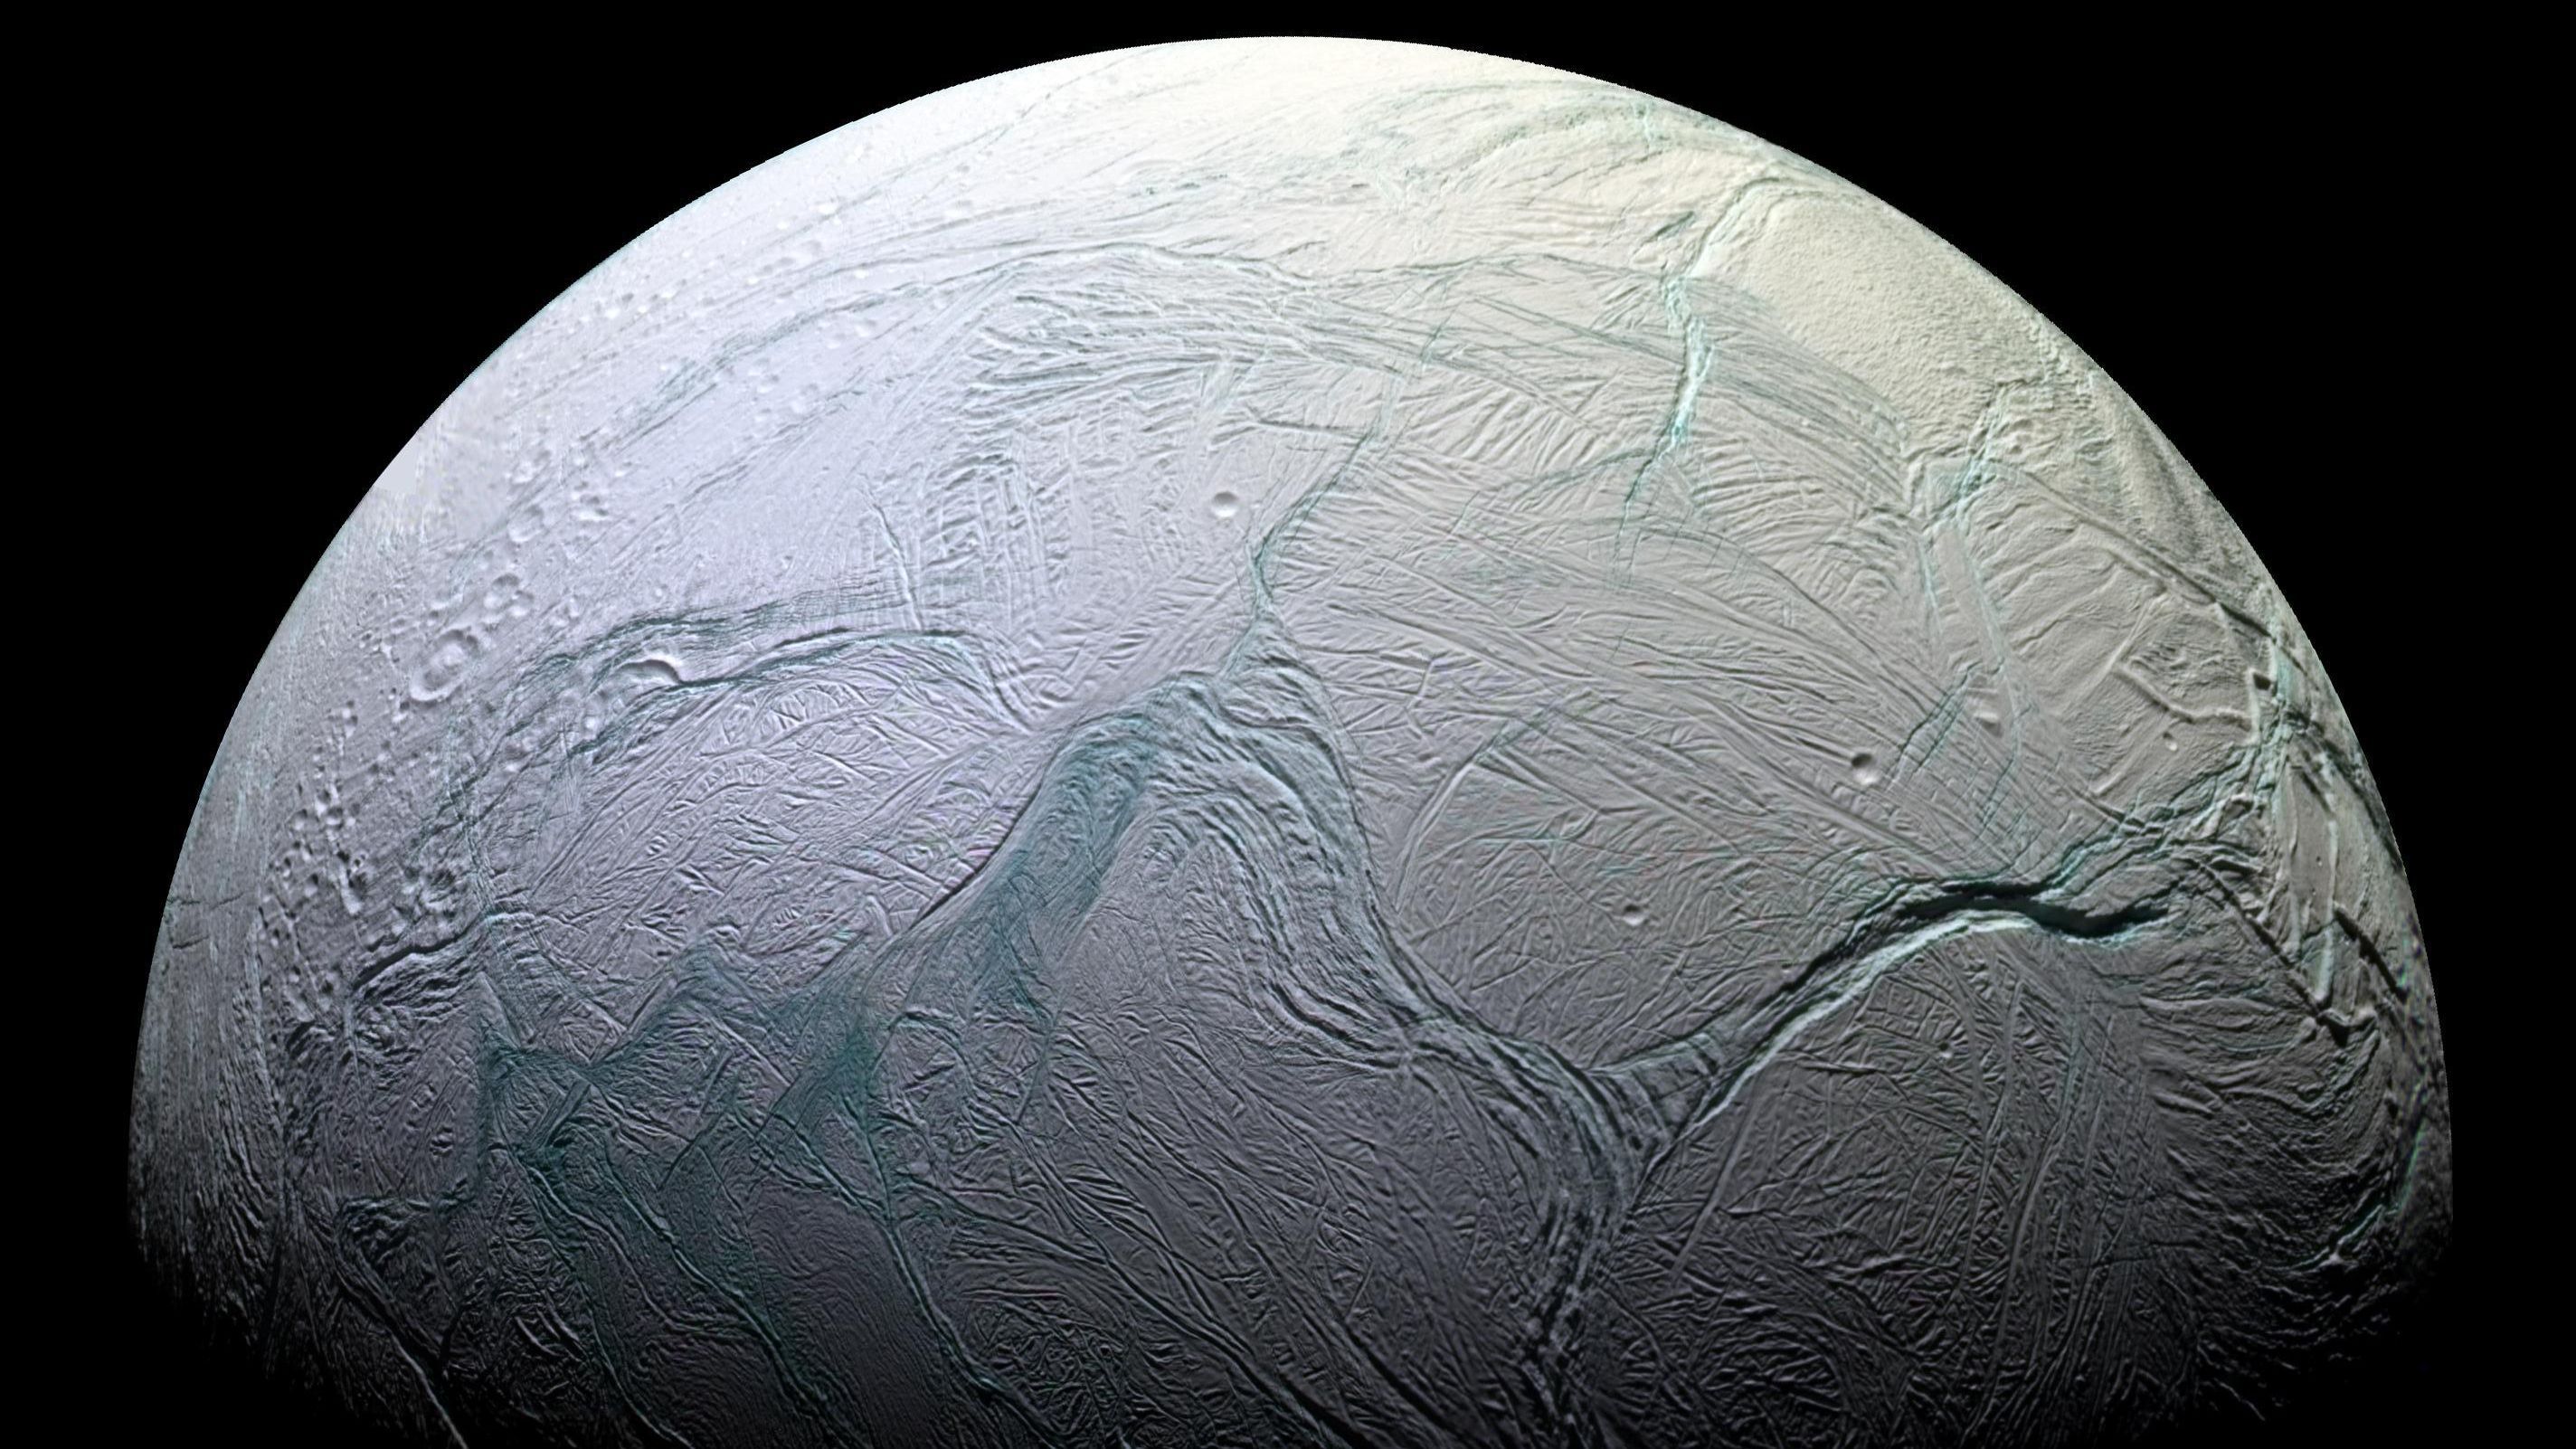 На спутнике Сатурна может существовать жизнь, – ученые - 7 ноября 2017 - Телеканал новин 24